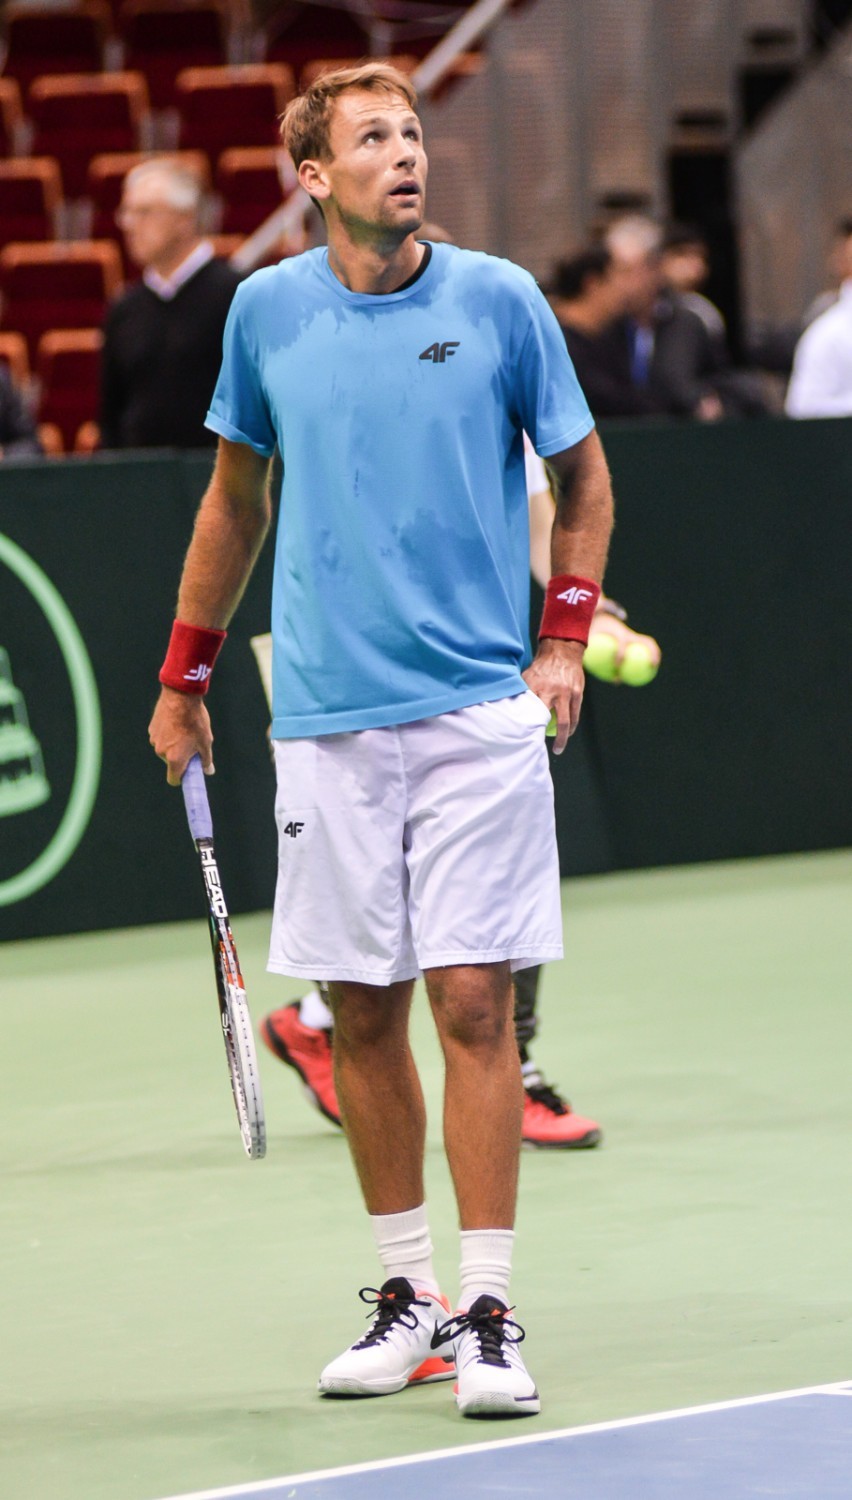 Zdjęcie zrobione podczas Davis Cup w 2016 roku.